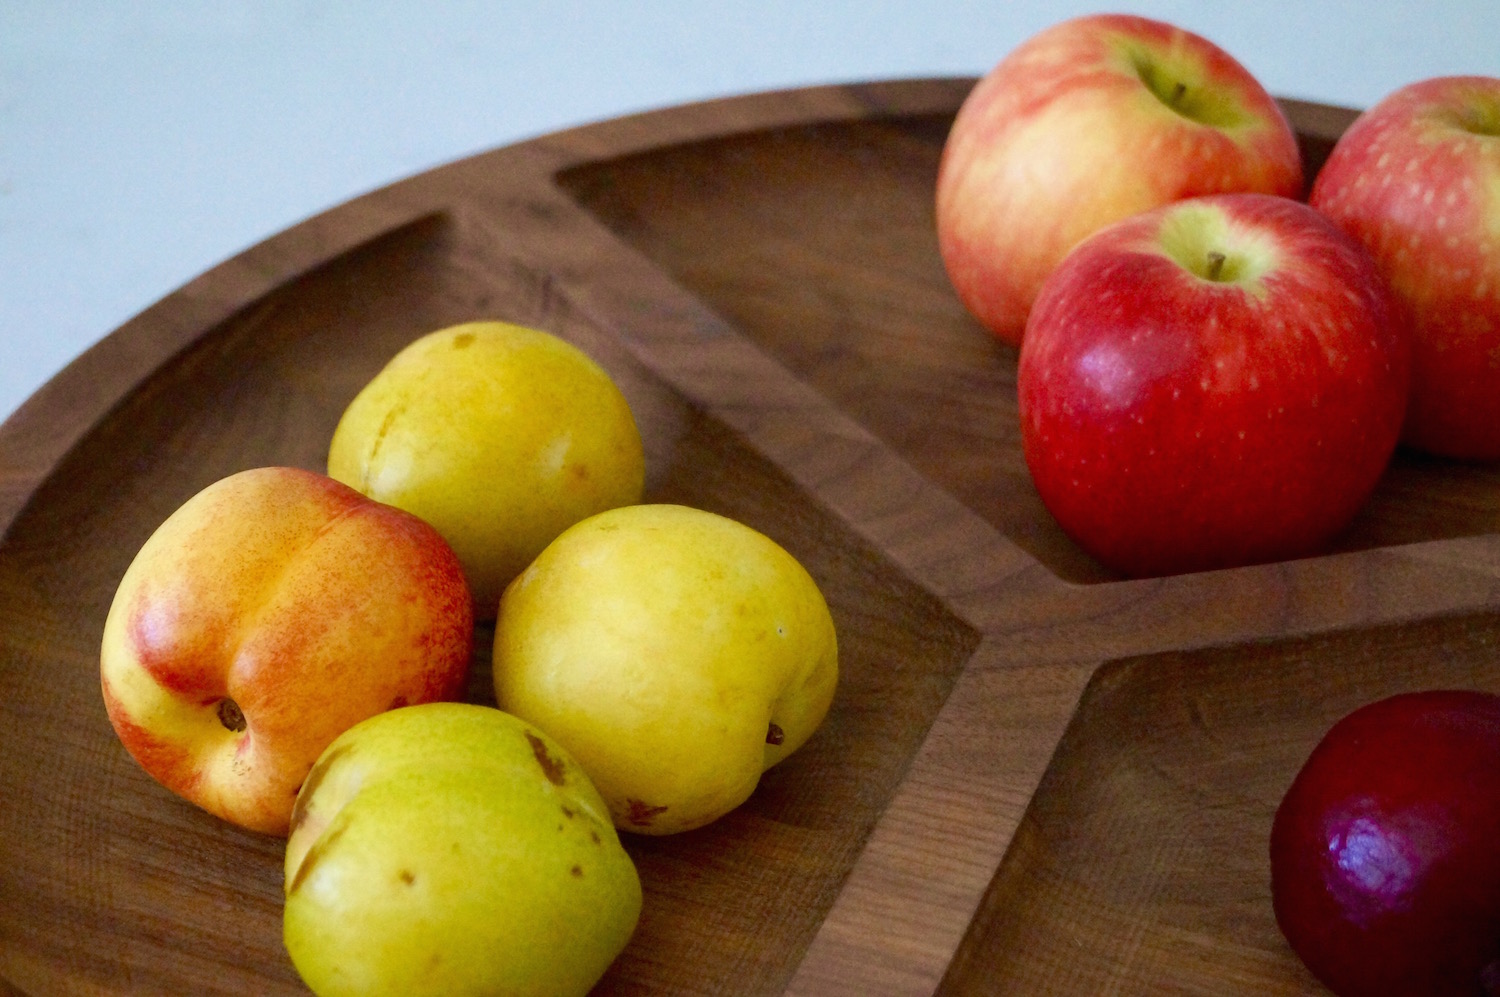 handmade-wooden-fruit-bowls-uk-makemesomethingspecial.com